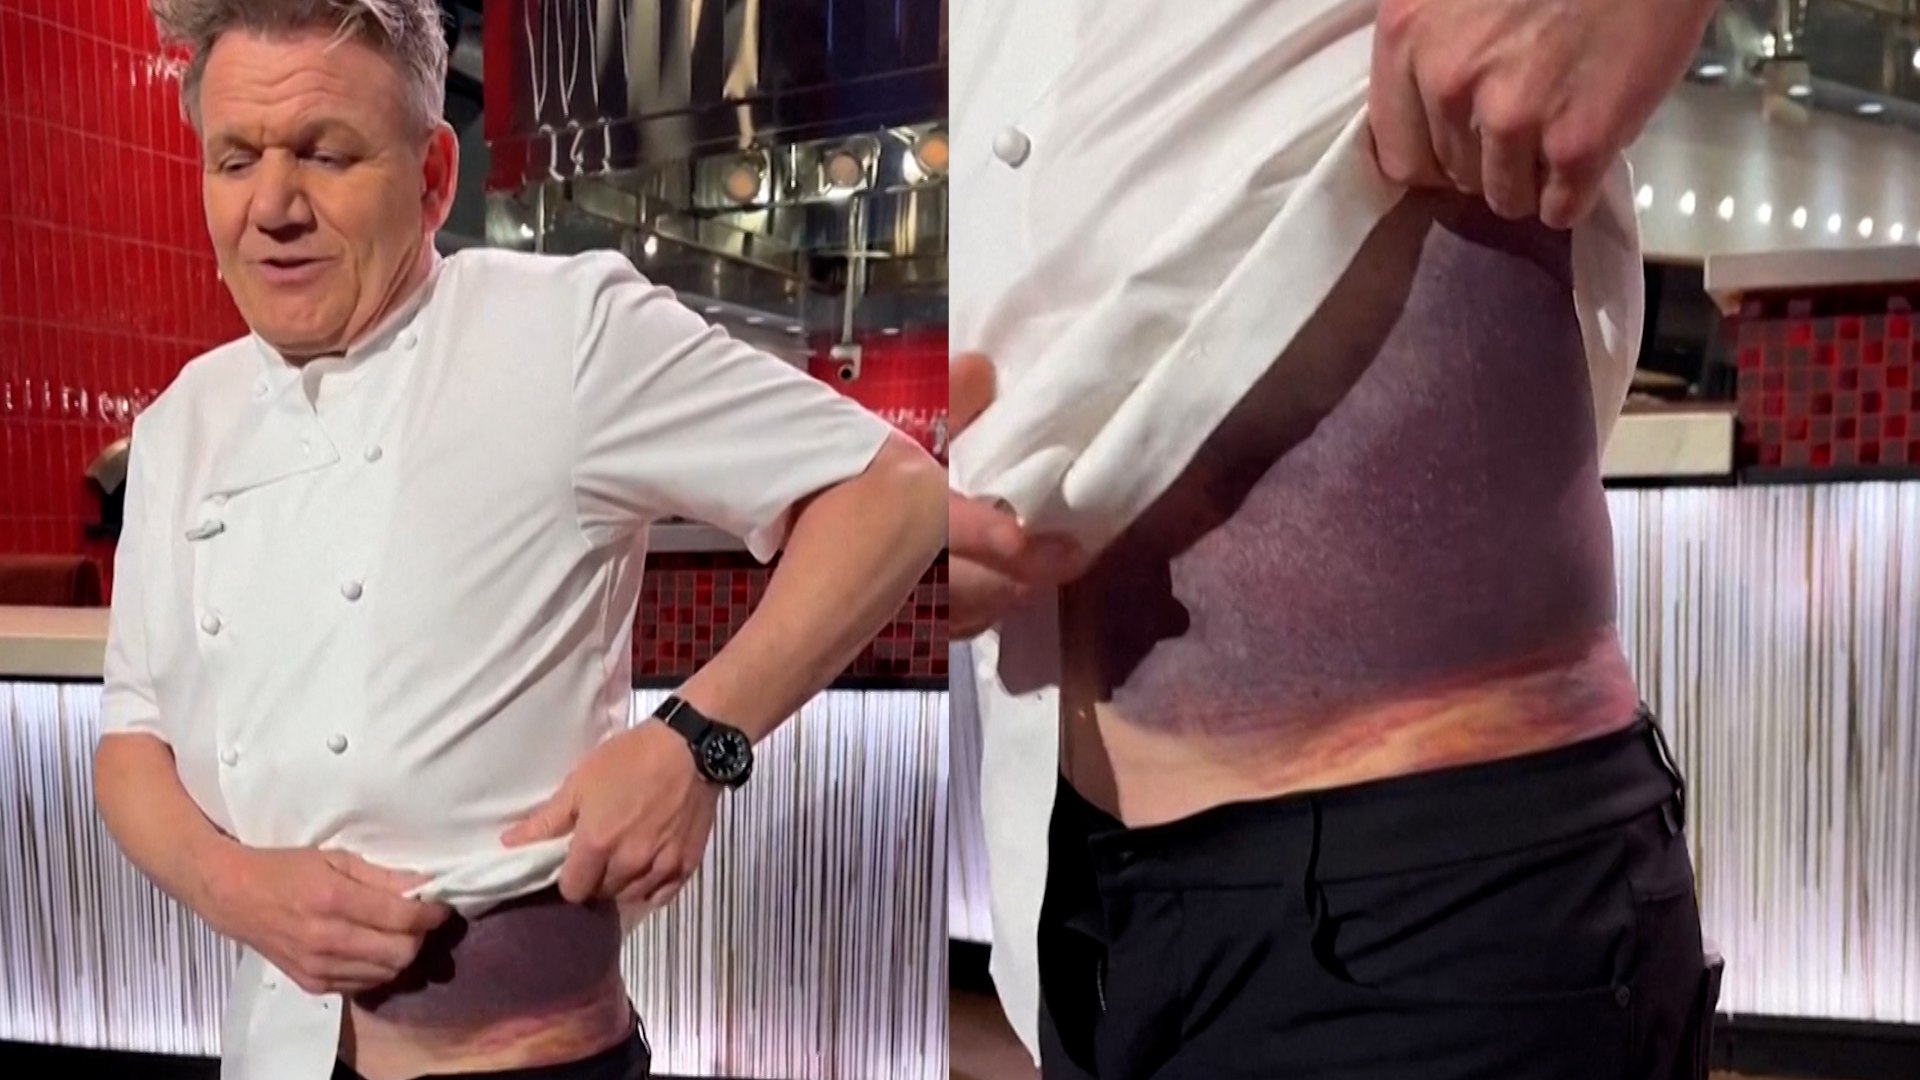 El chef Gordon Ramsay sufre un aparatoso accidente: "El casco salv mi vida"